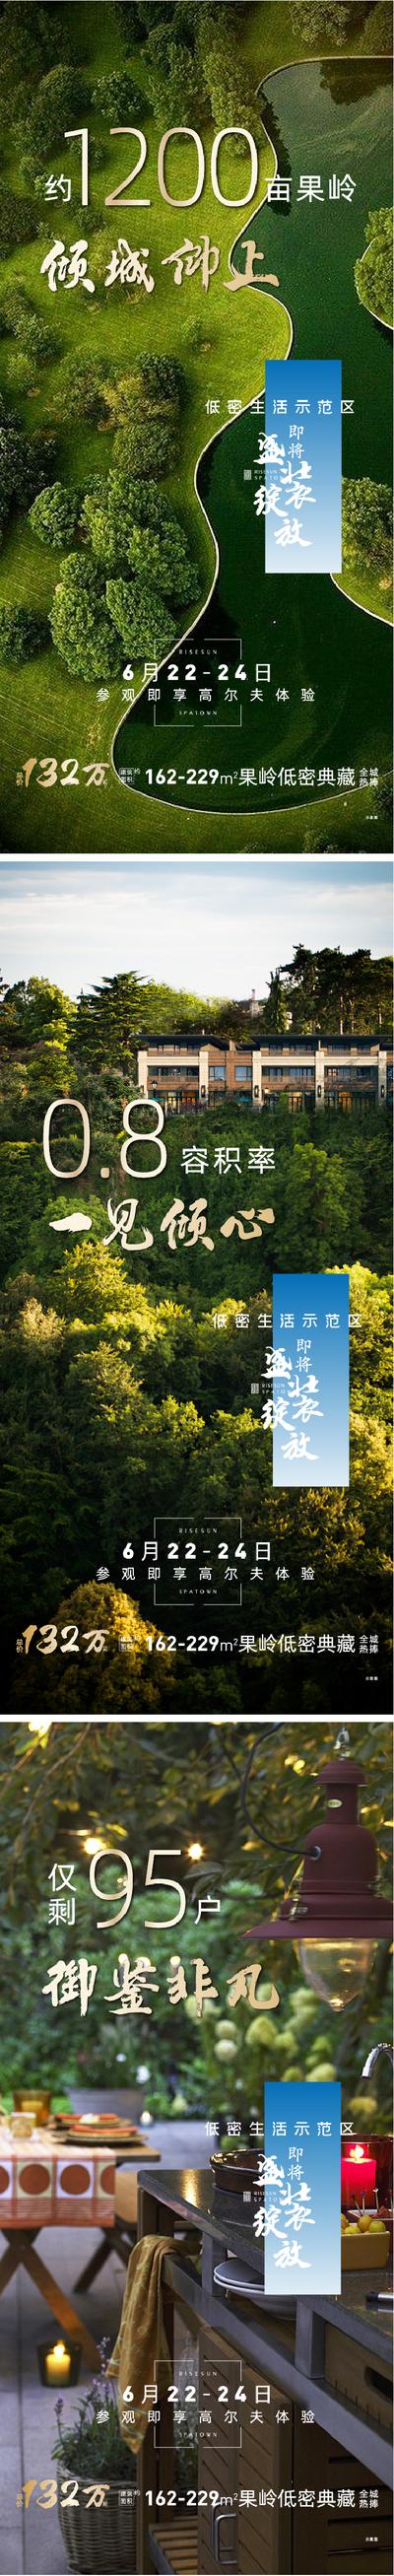 南门网 海报 房地产 价值点 示范区 园林 景观